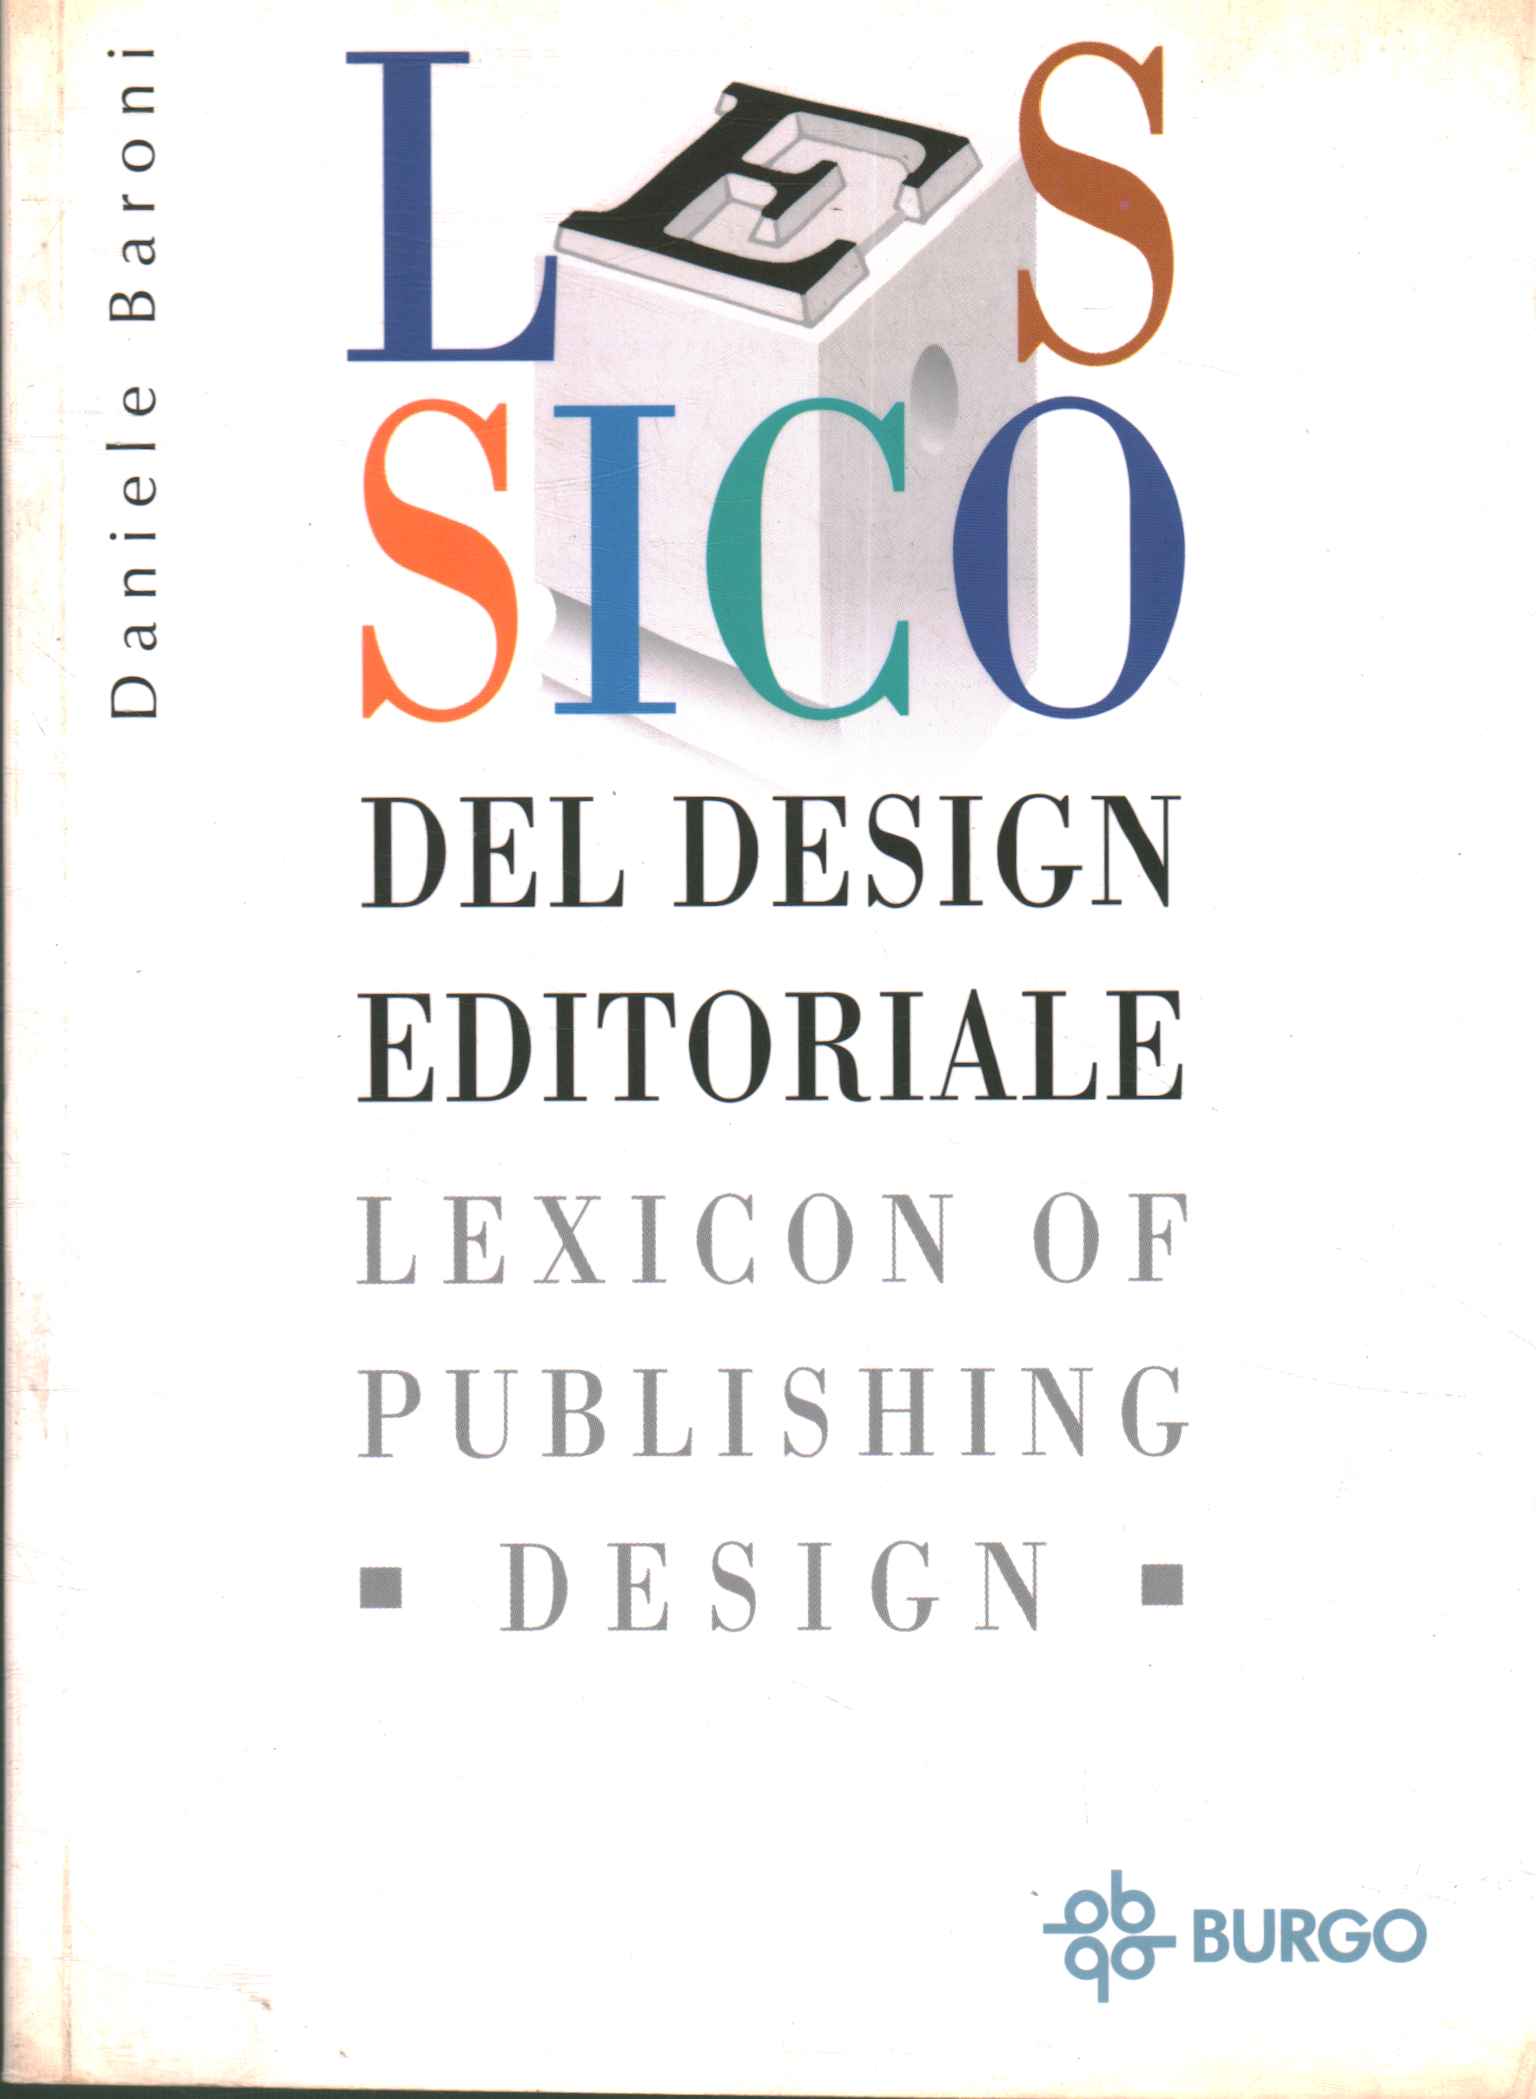 Editorial design lexicon. Lexicon or